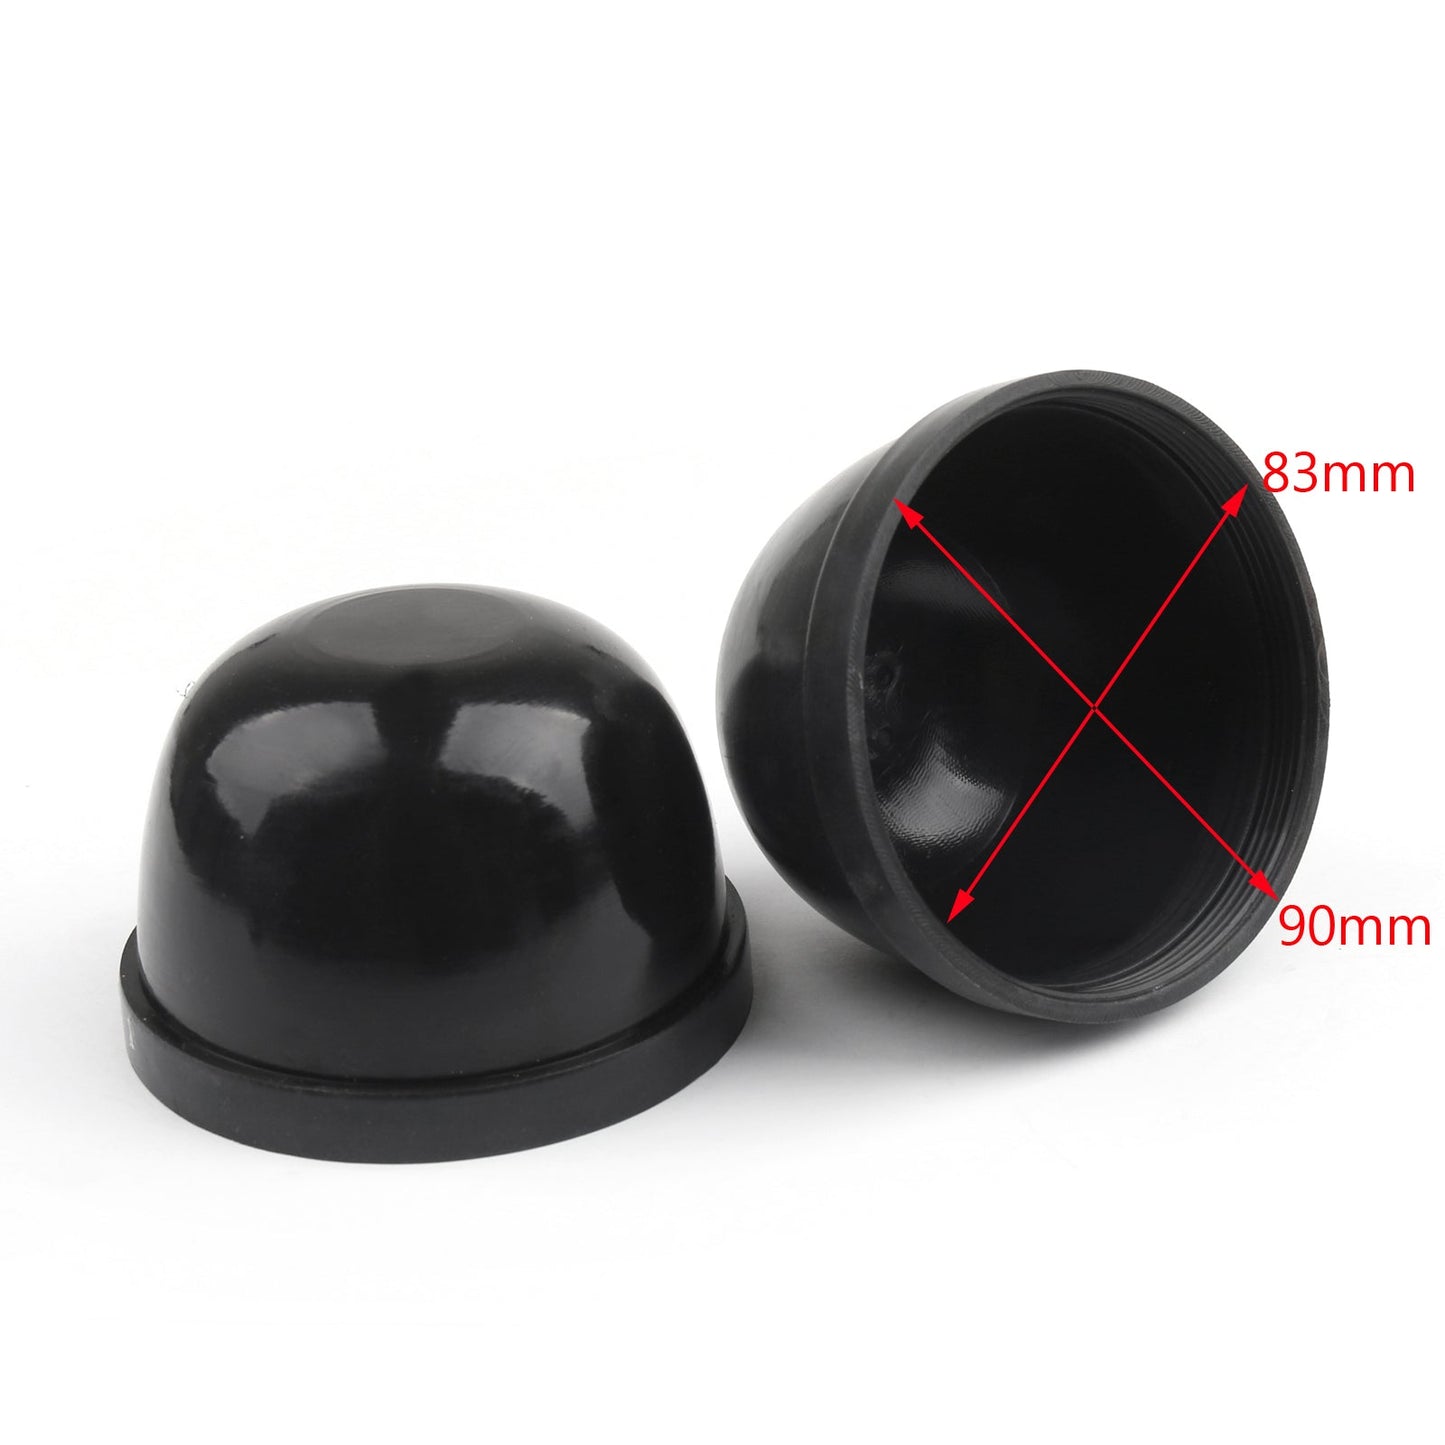 85mm Inner Diameter Rubber Housing Seal Cap Dust Cover LED HID Headlight, Black